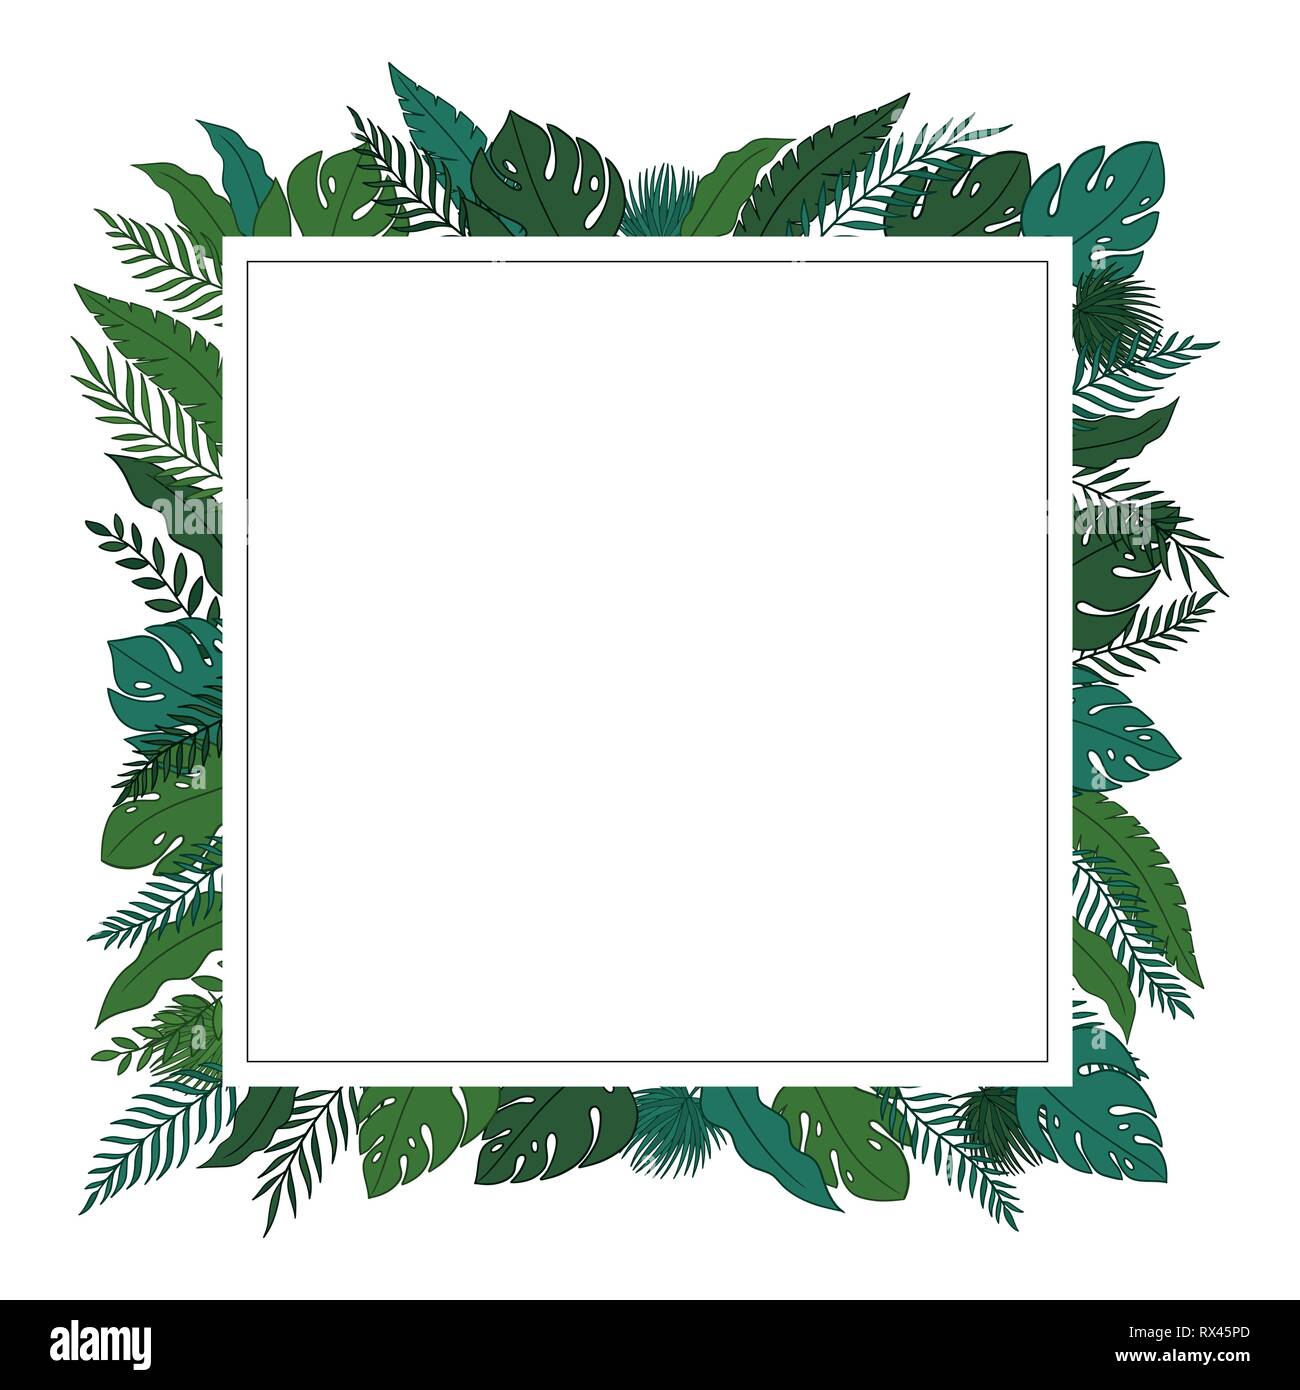 Tropischen Dschungel Blätter Rand mit einem leeren Platz Platz für einen Text, Logo oder Produkt Designs. Blick von oben. Hand Vector Illustration gezeichnet. Stock Vektor